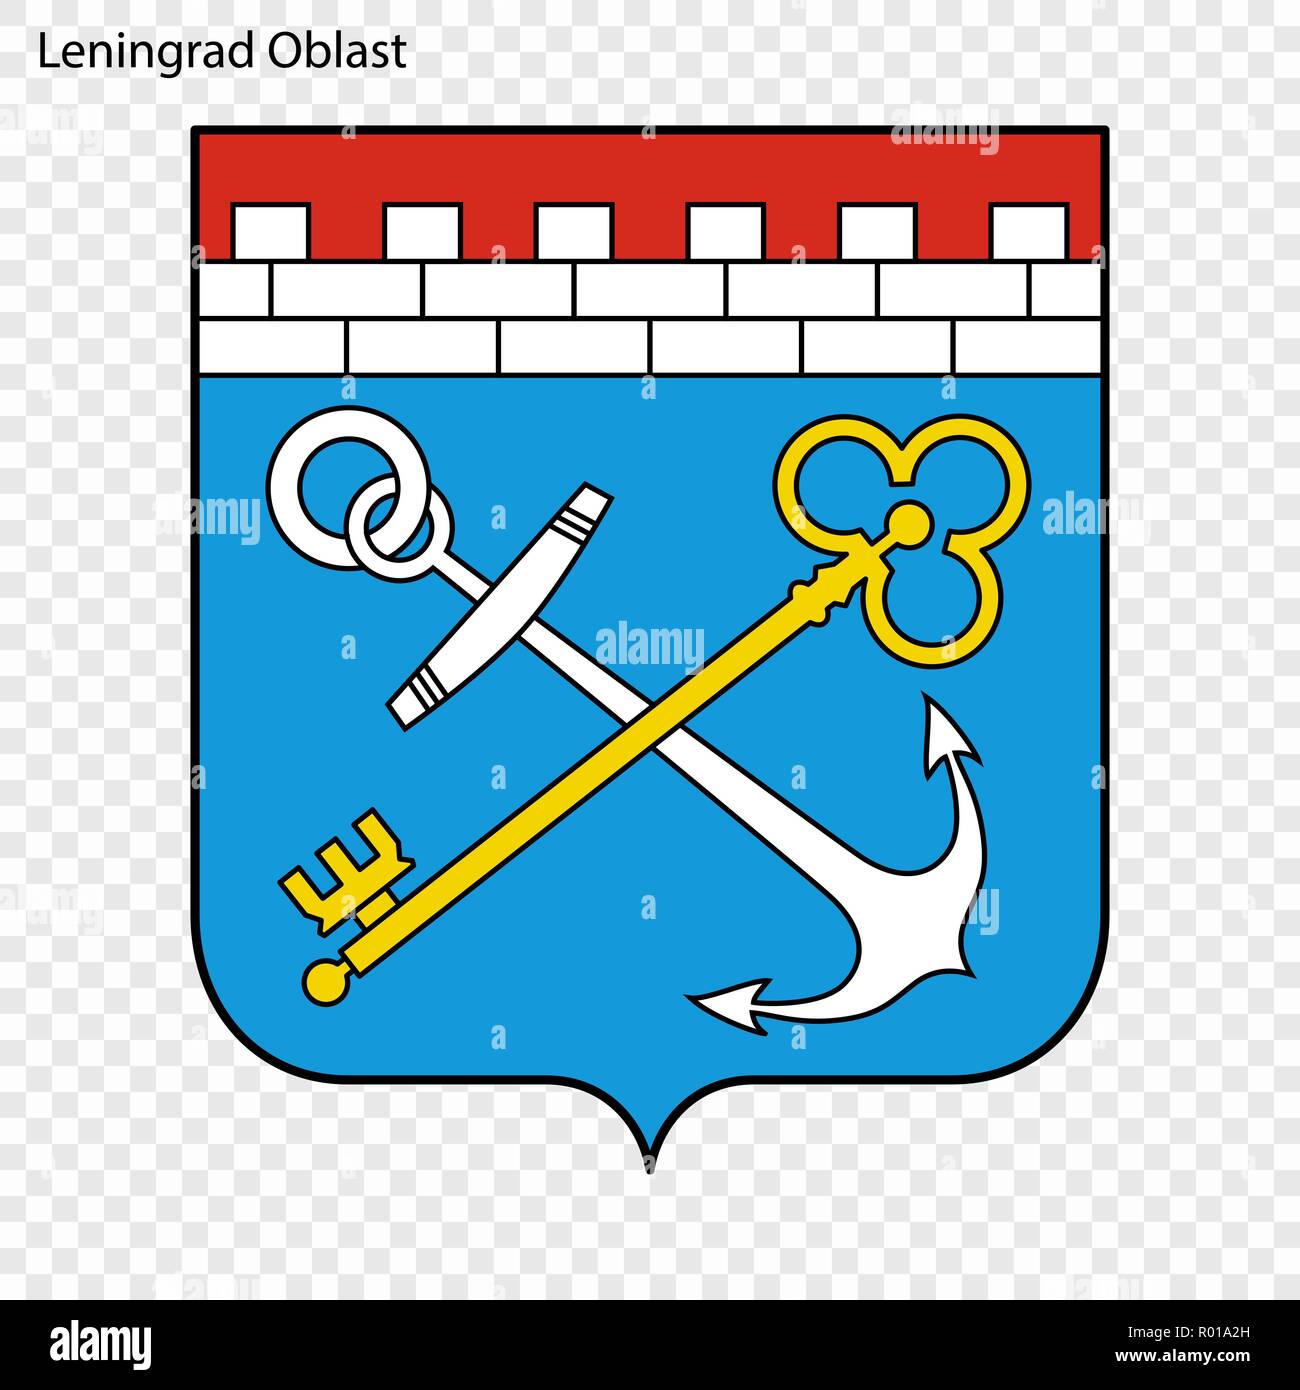 L'emblème de l'Oblast de Léningrad, province de la Russie Illustration de Vecteur